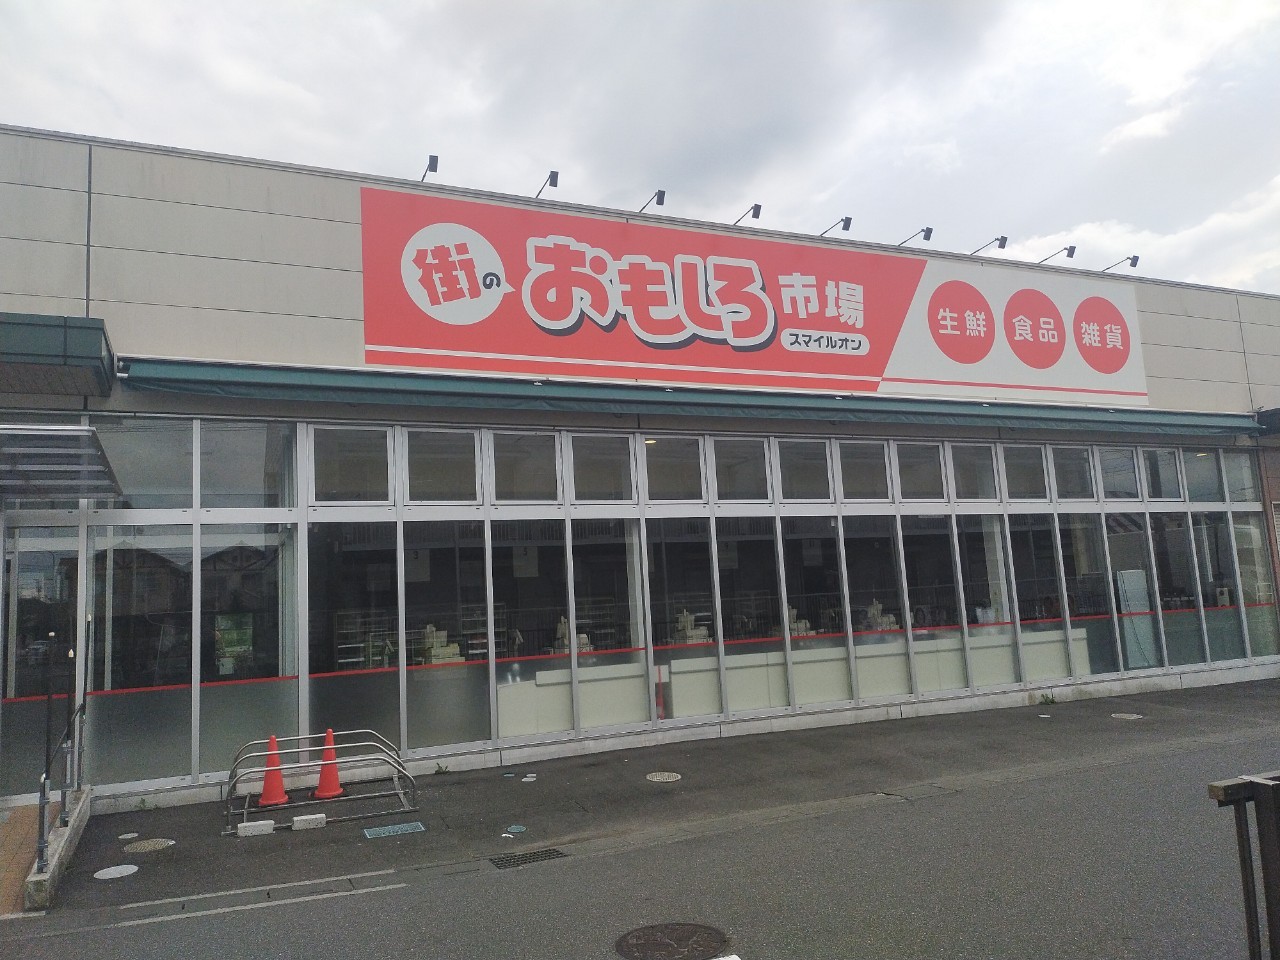 弥十郎のスーパー、街のおもしろ市場スマイルオンが閉店していました【がやてっく閉店...